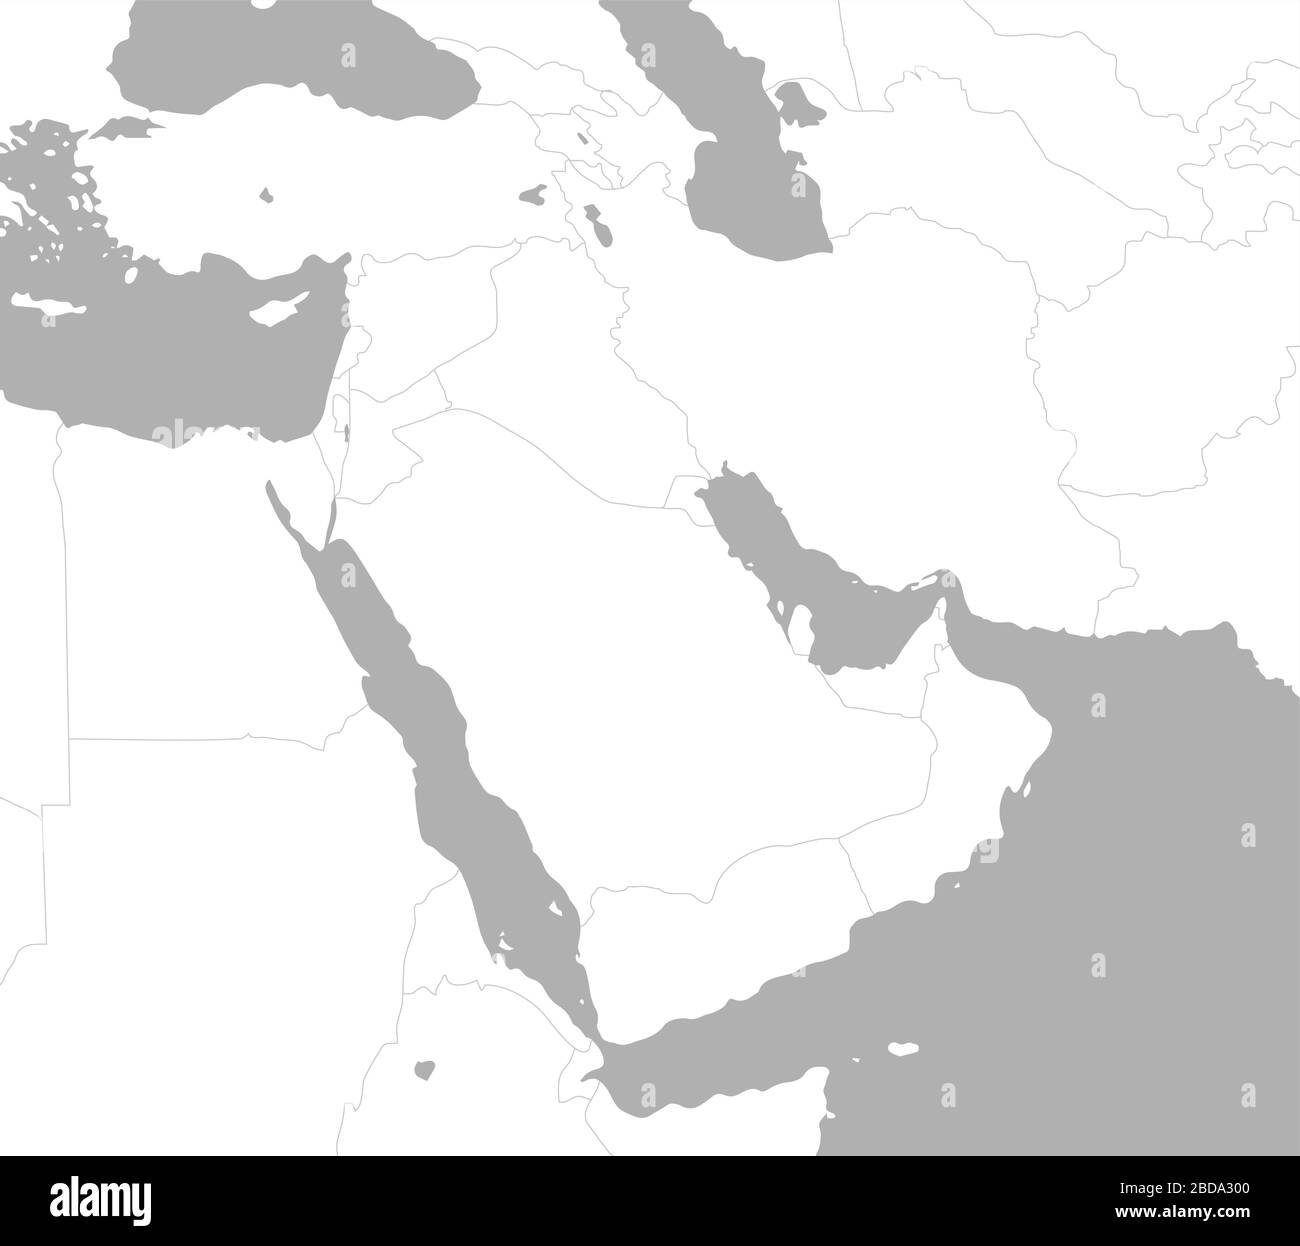 Moyen-Orient , carte des pays arabes / pas de texte Illustration de Vecteur